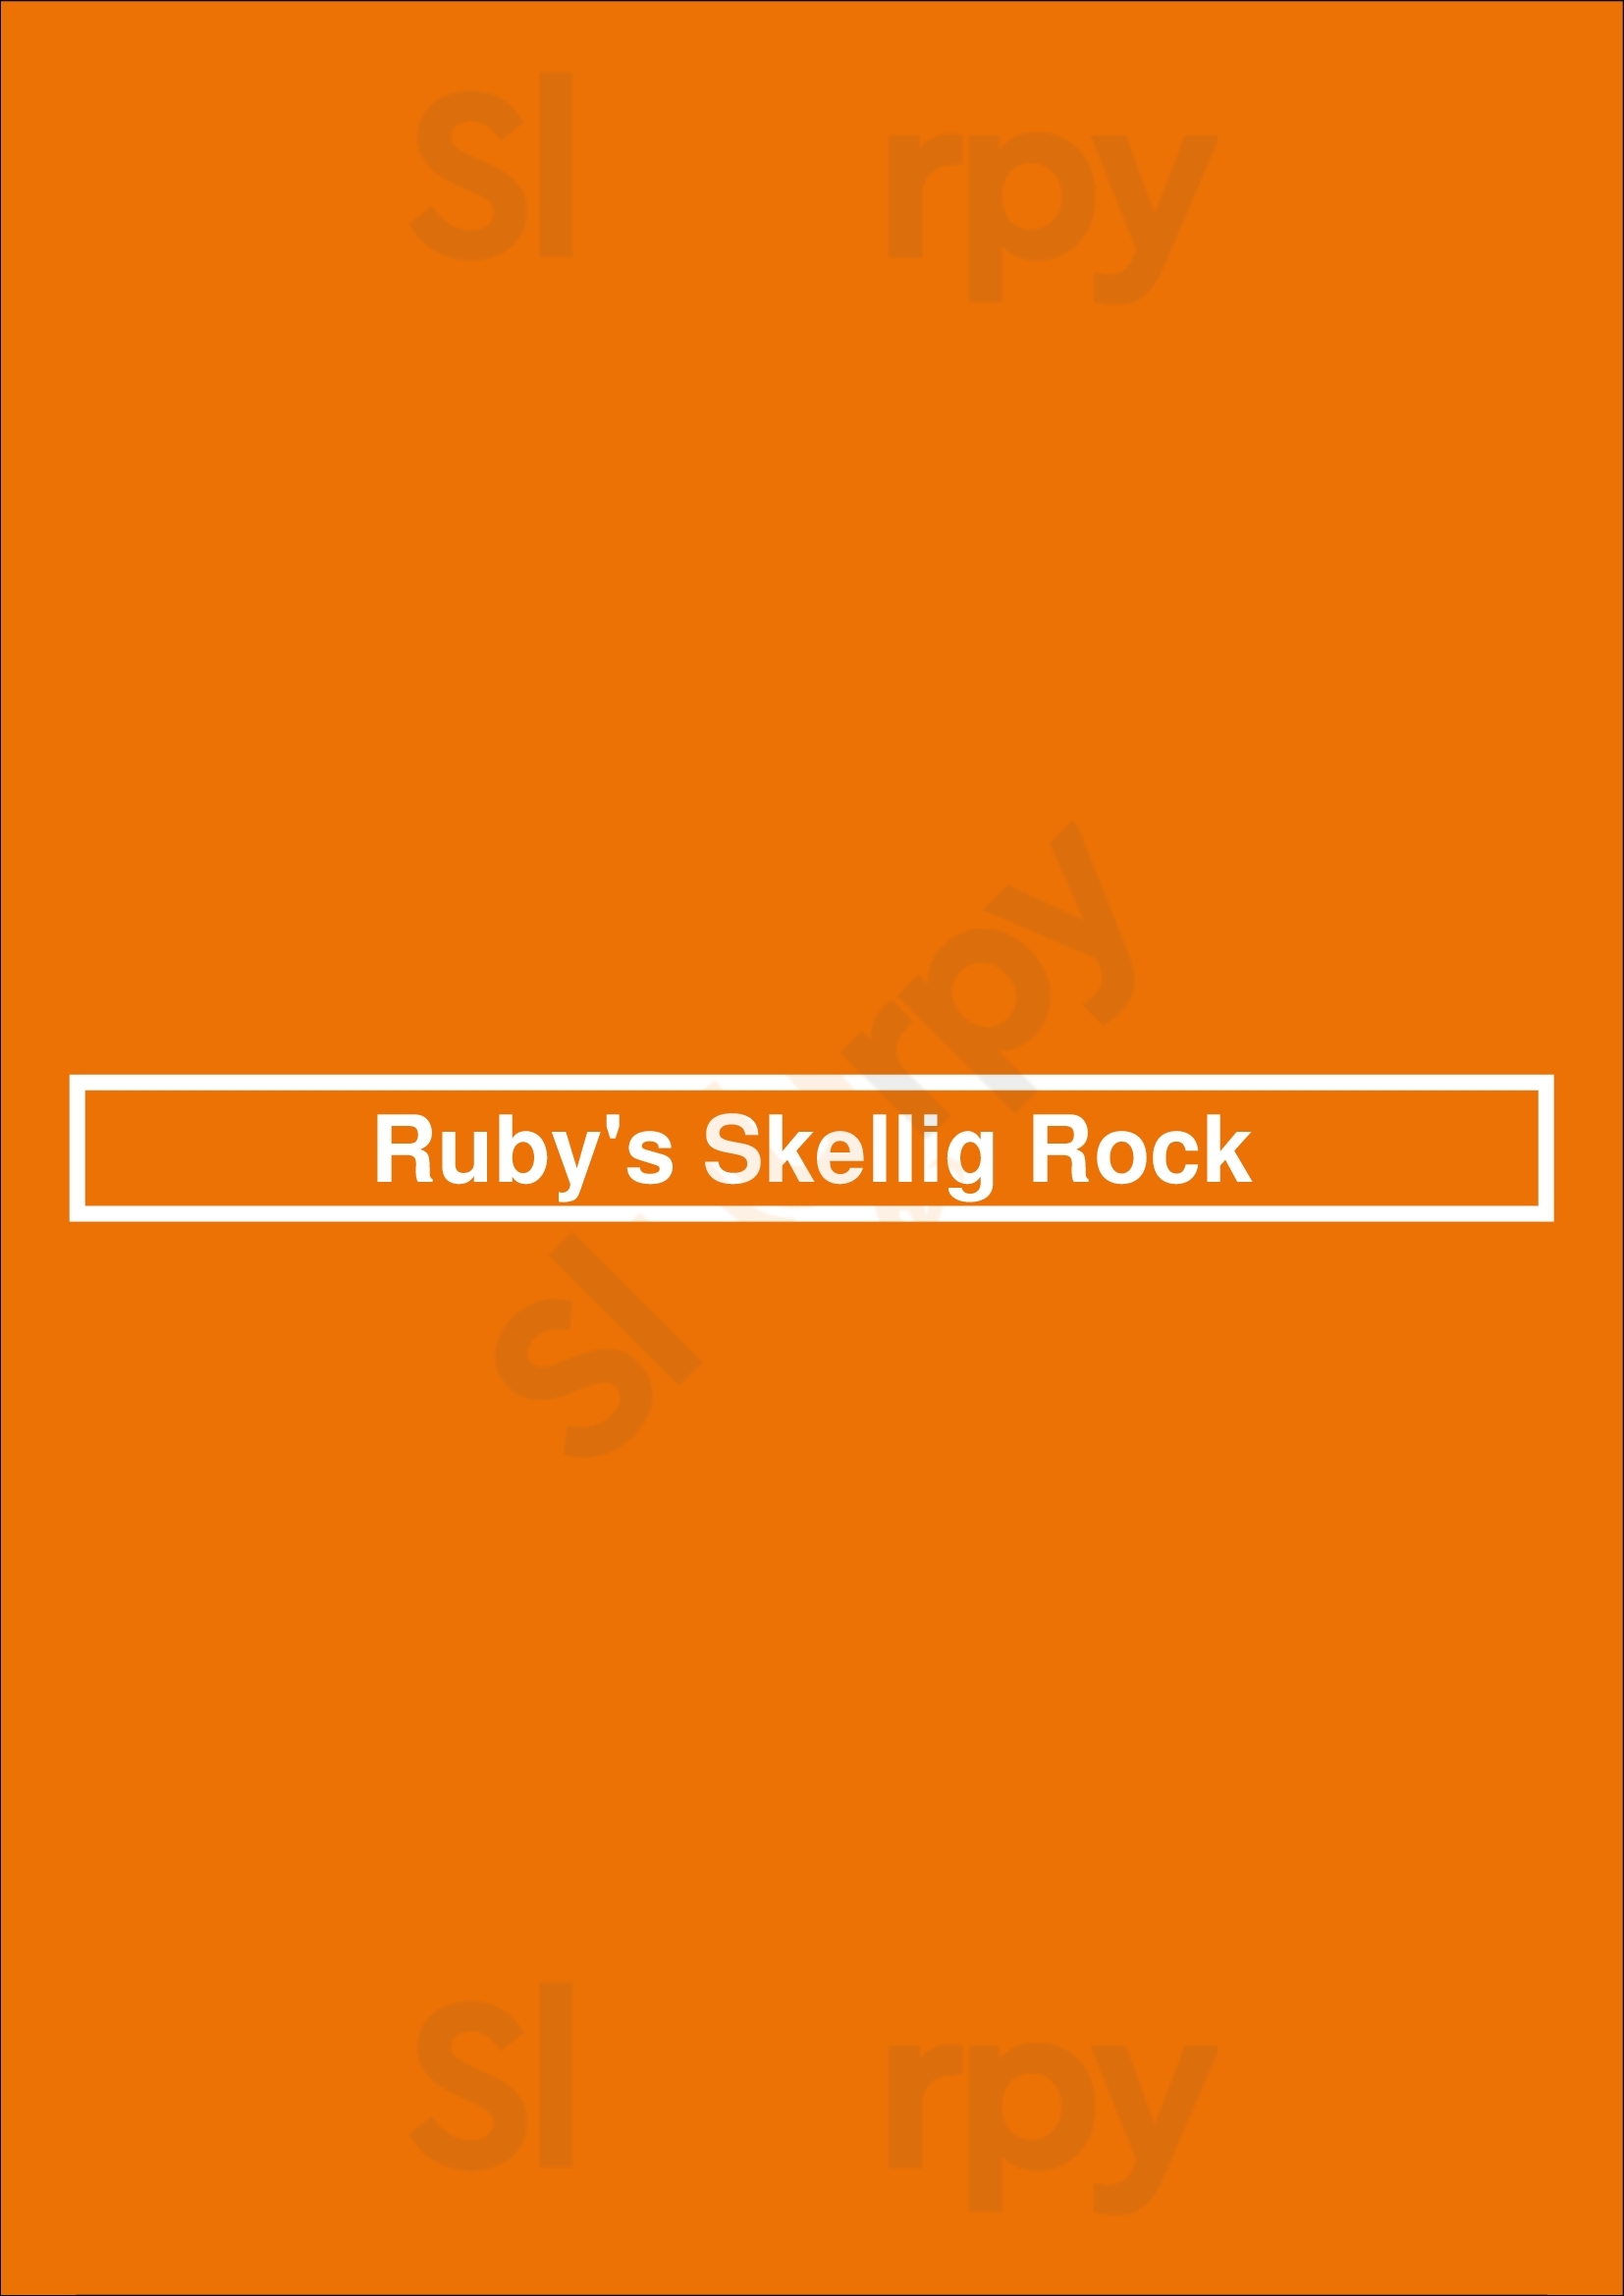 Ruby's Skellig Rock Cahersiveen Menu - 1